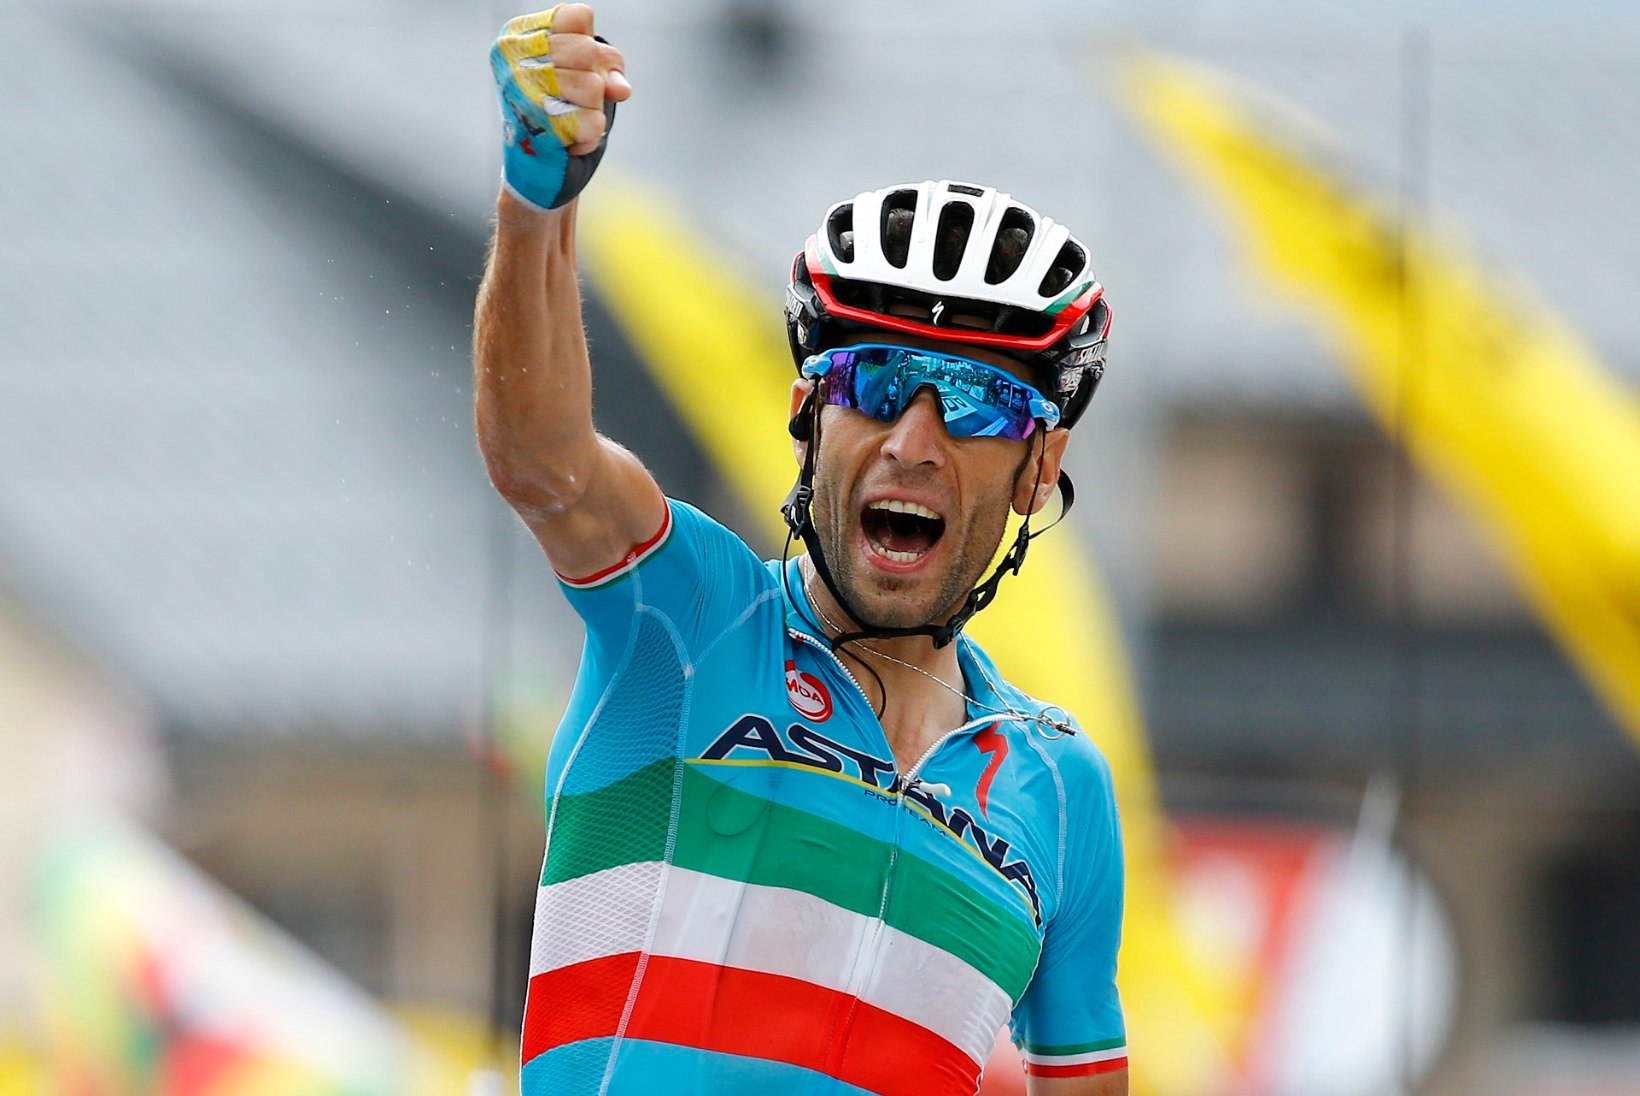 Nibali võttis võimsa sõiduga etapivõidu, Froome jätkab liidrina